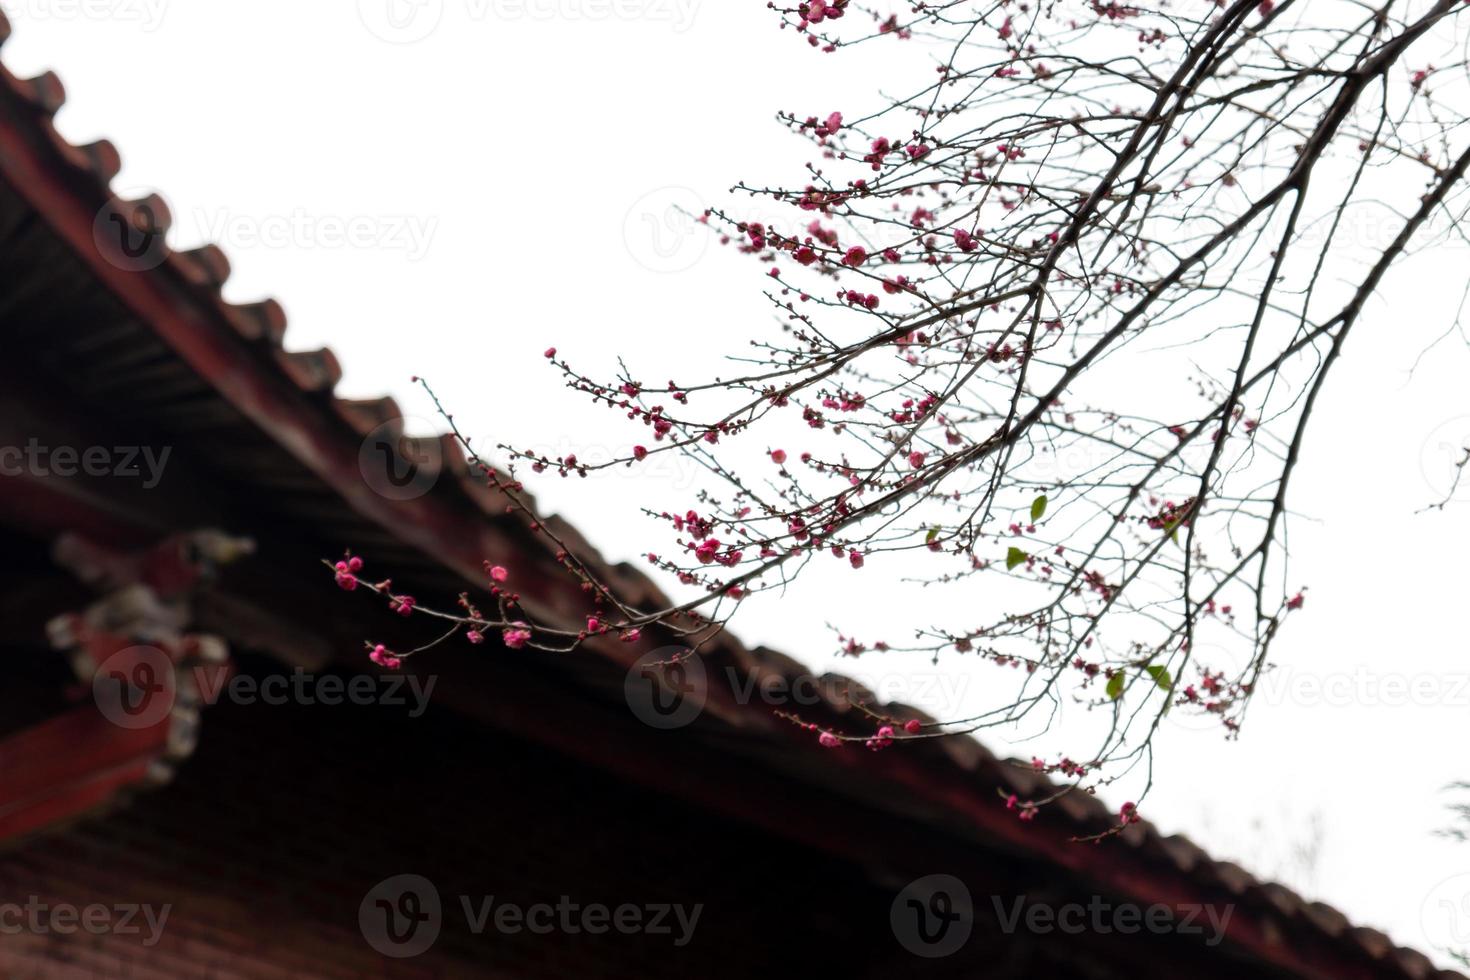 de rosa plommonblommorna i buddhistiska tempel är öppna foto